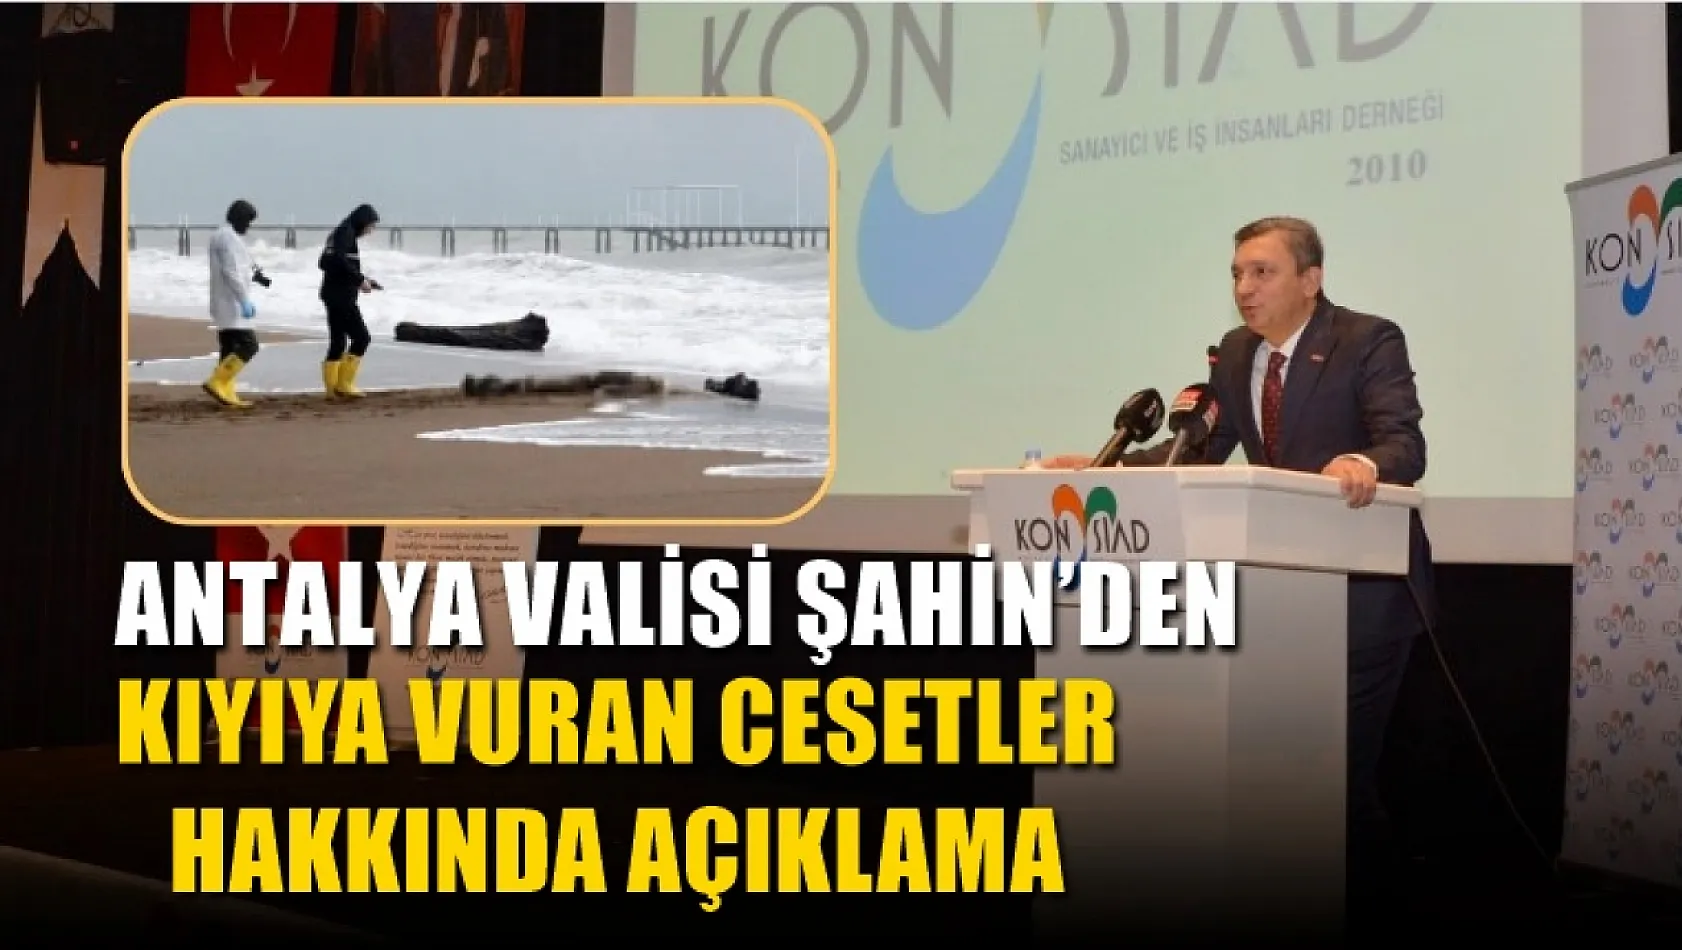 Antalya Valisi Şahin'den kıyıya vuran cesetler hakkında açıklama 